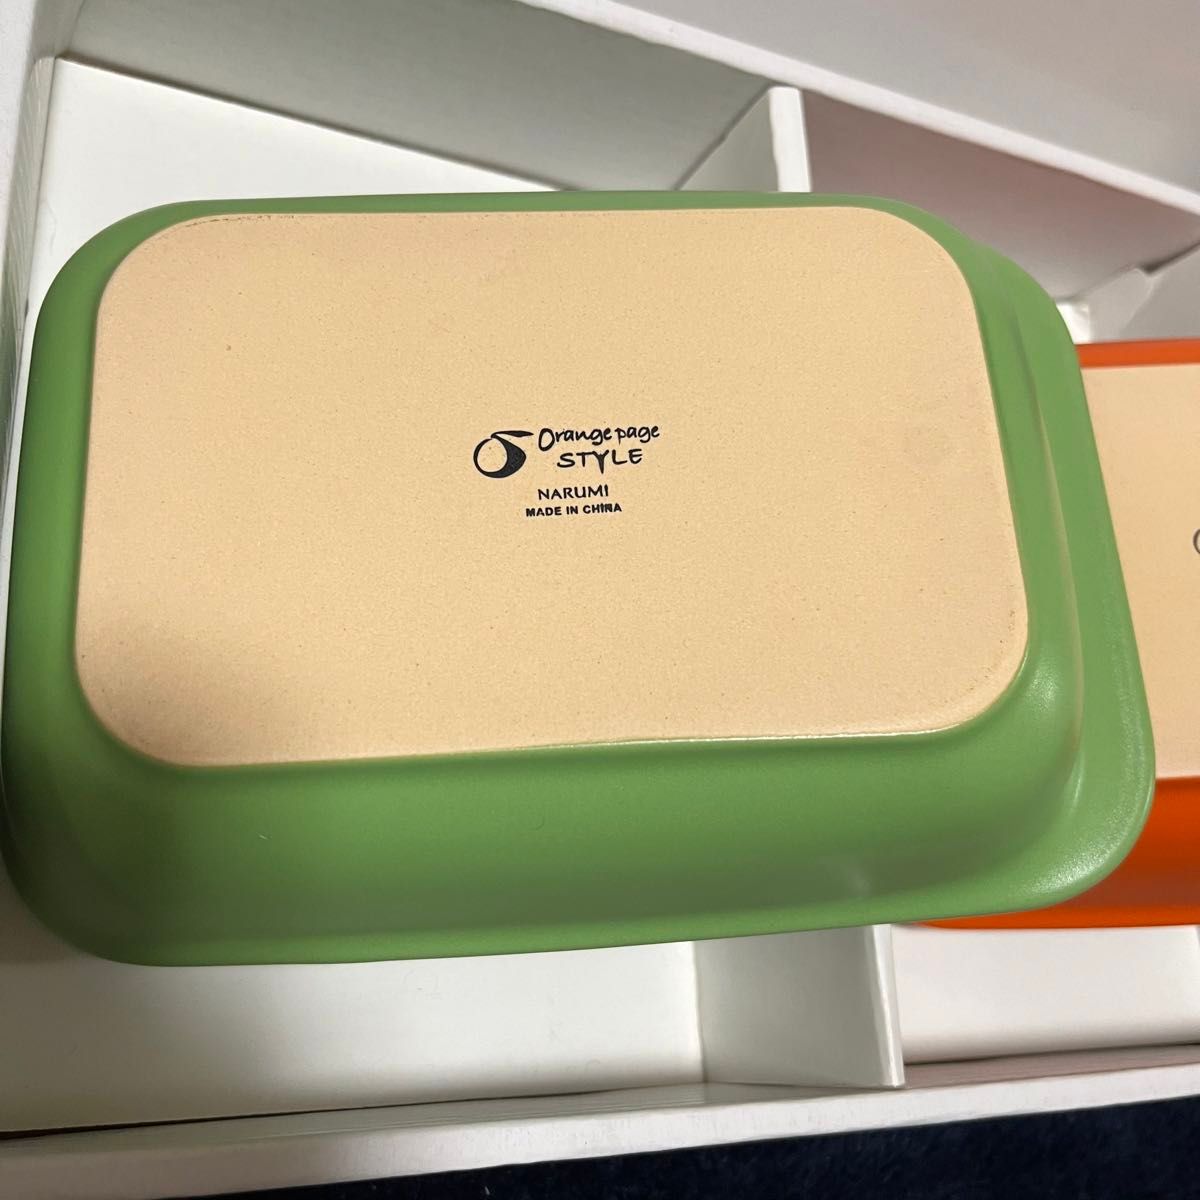 新品未使用 ペア トースタークックディッシュ オレンジ グリーン ナルミ・オレンジページスタイル  オーブントレイ グラタン皿